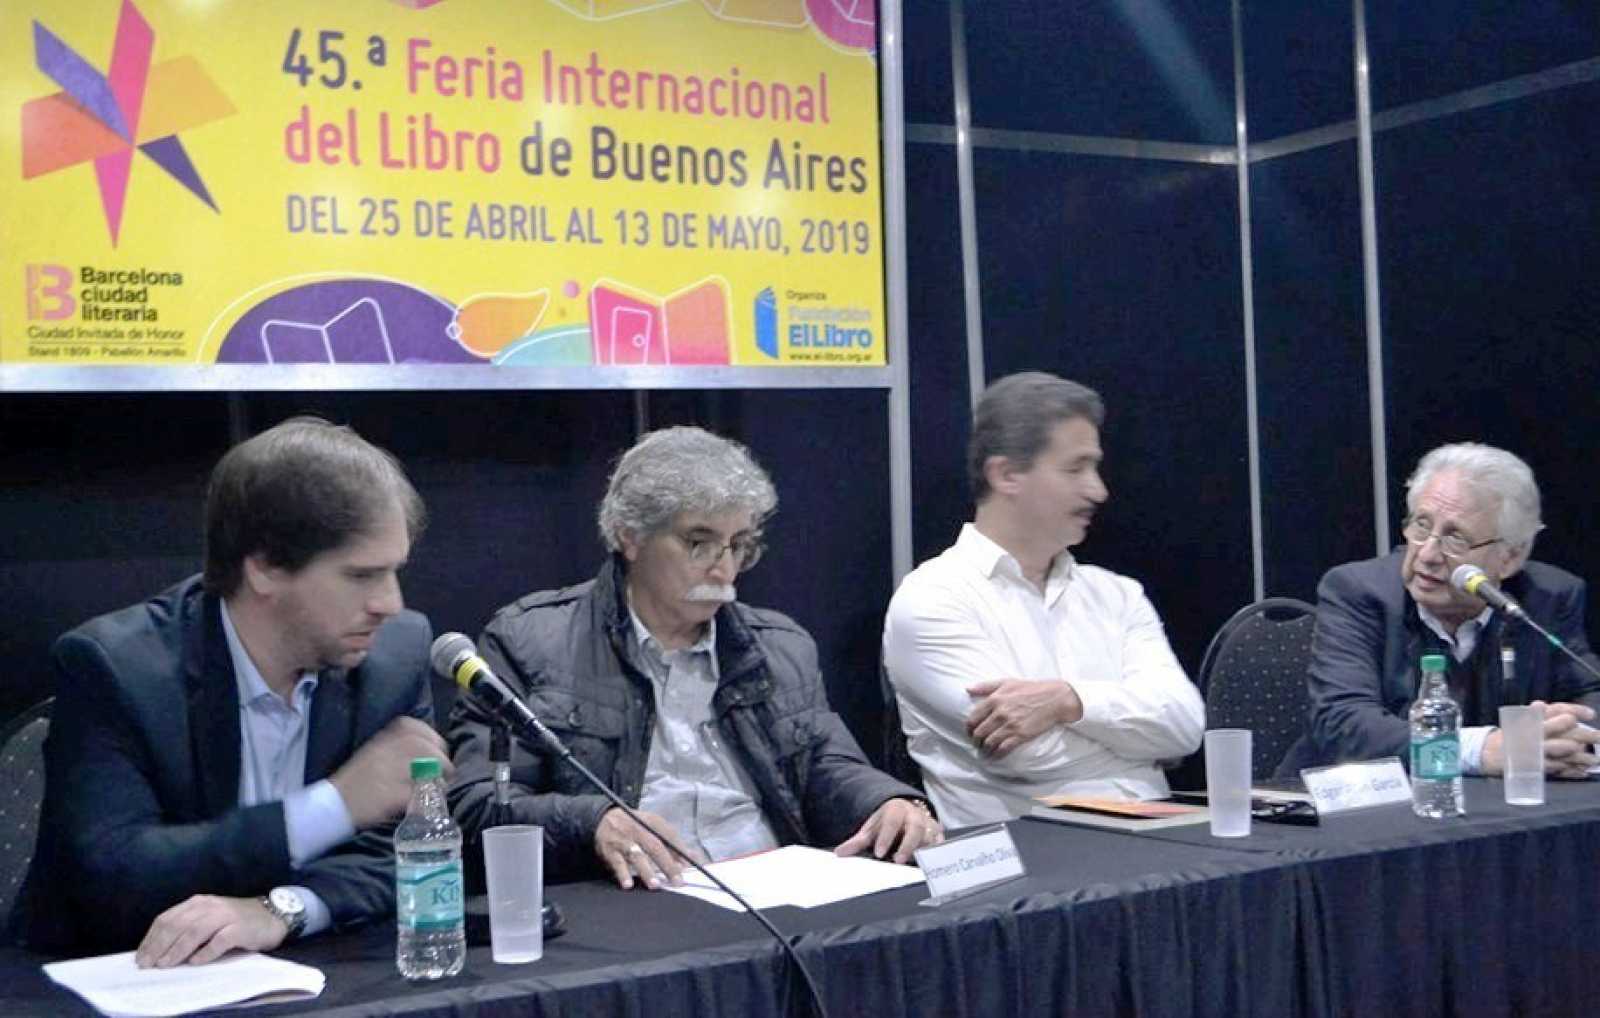 APROXIMACIÓN A LA 45ª FERIA INTERNACIONAL DEL LIBRO DE BUENOS AIRES